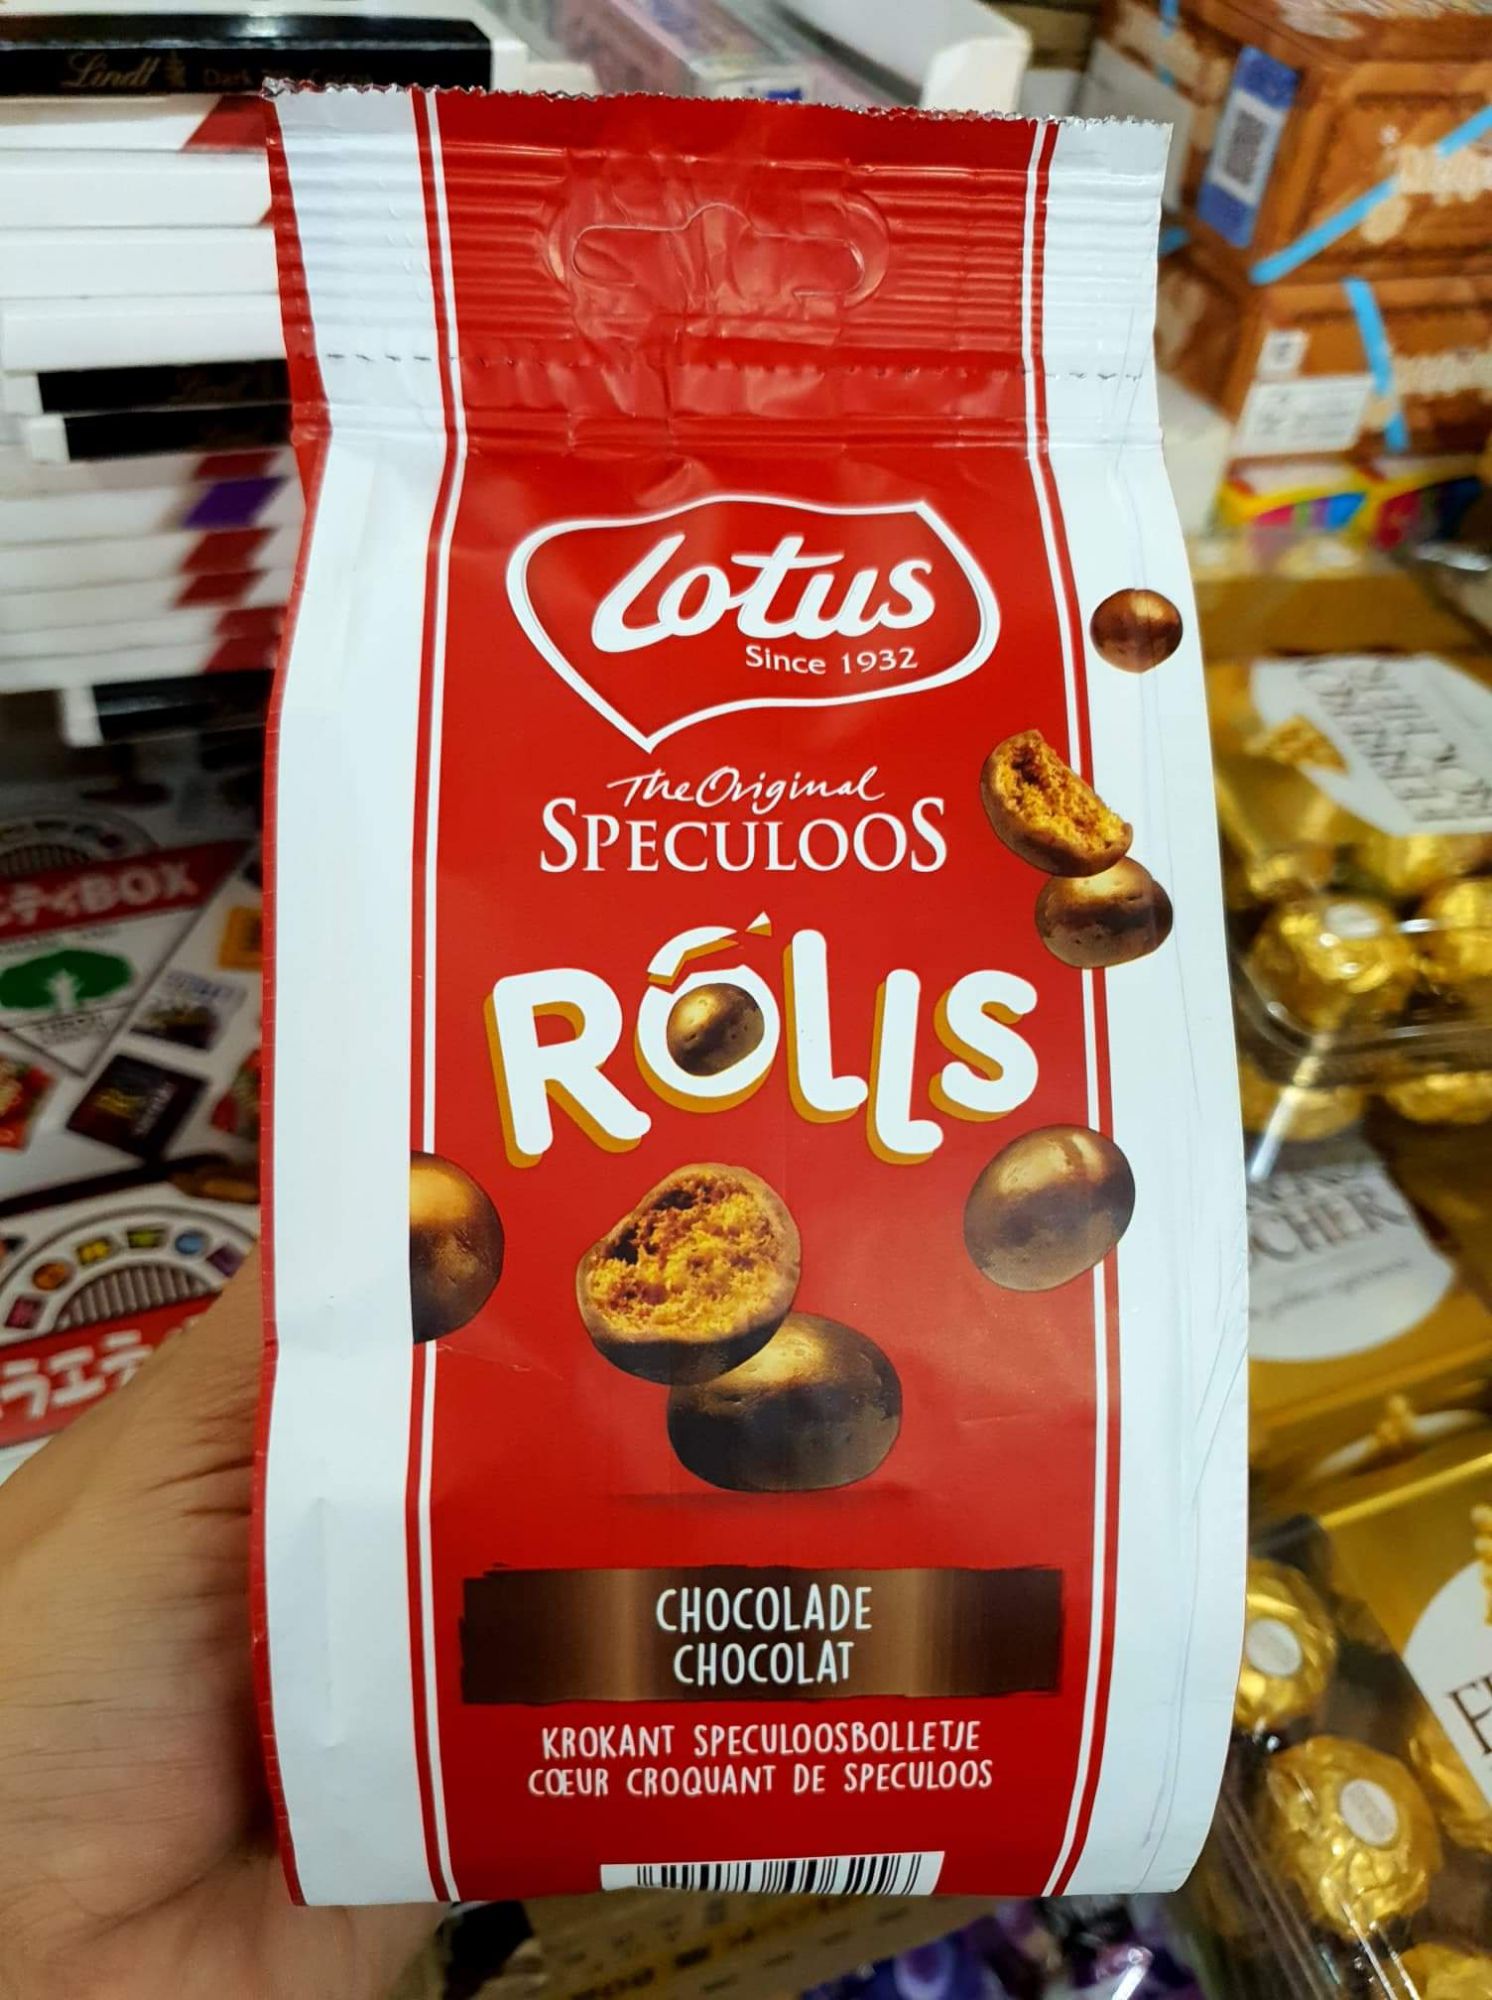 ช็อคโกแลต Lotus Biscoff Rolls เวเฟอร์กลมเคลือบช็อคโกแลต ขนาด 150 กรัม ขนมนำเข้า